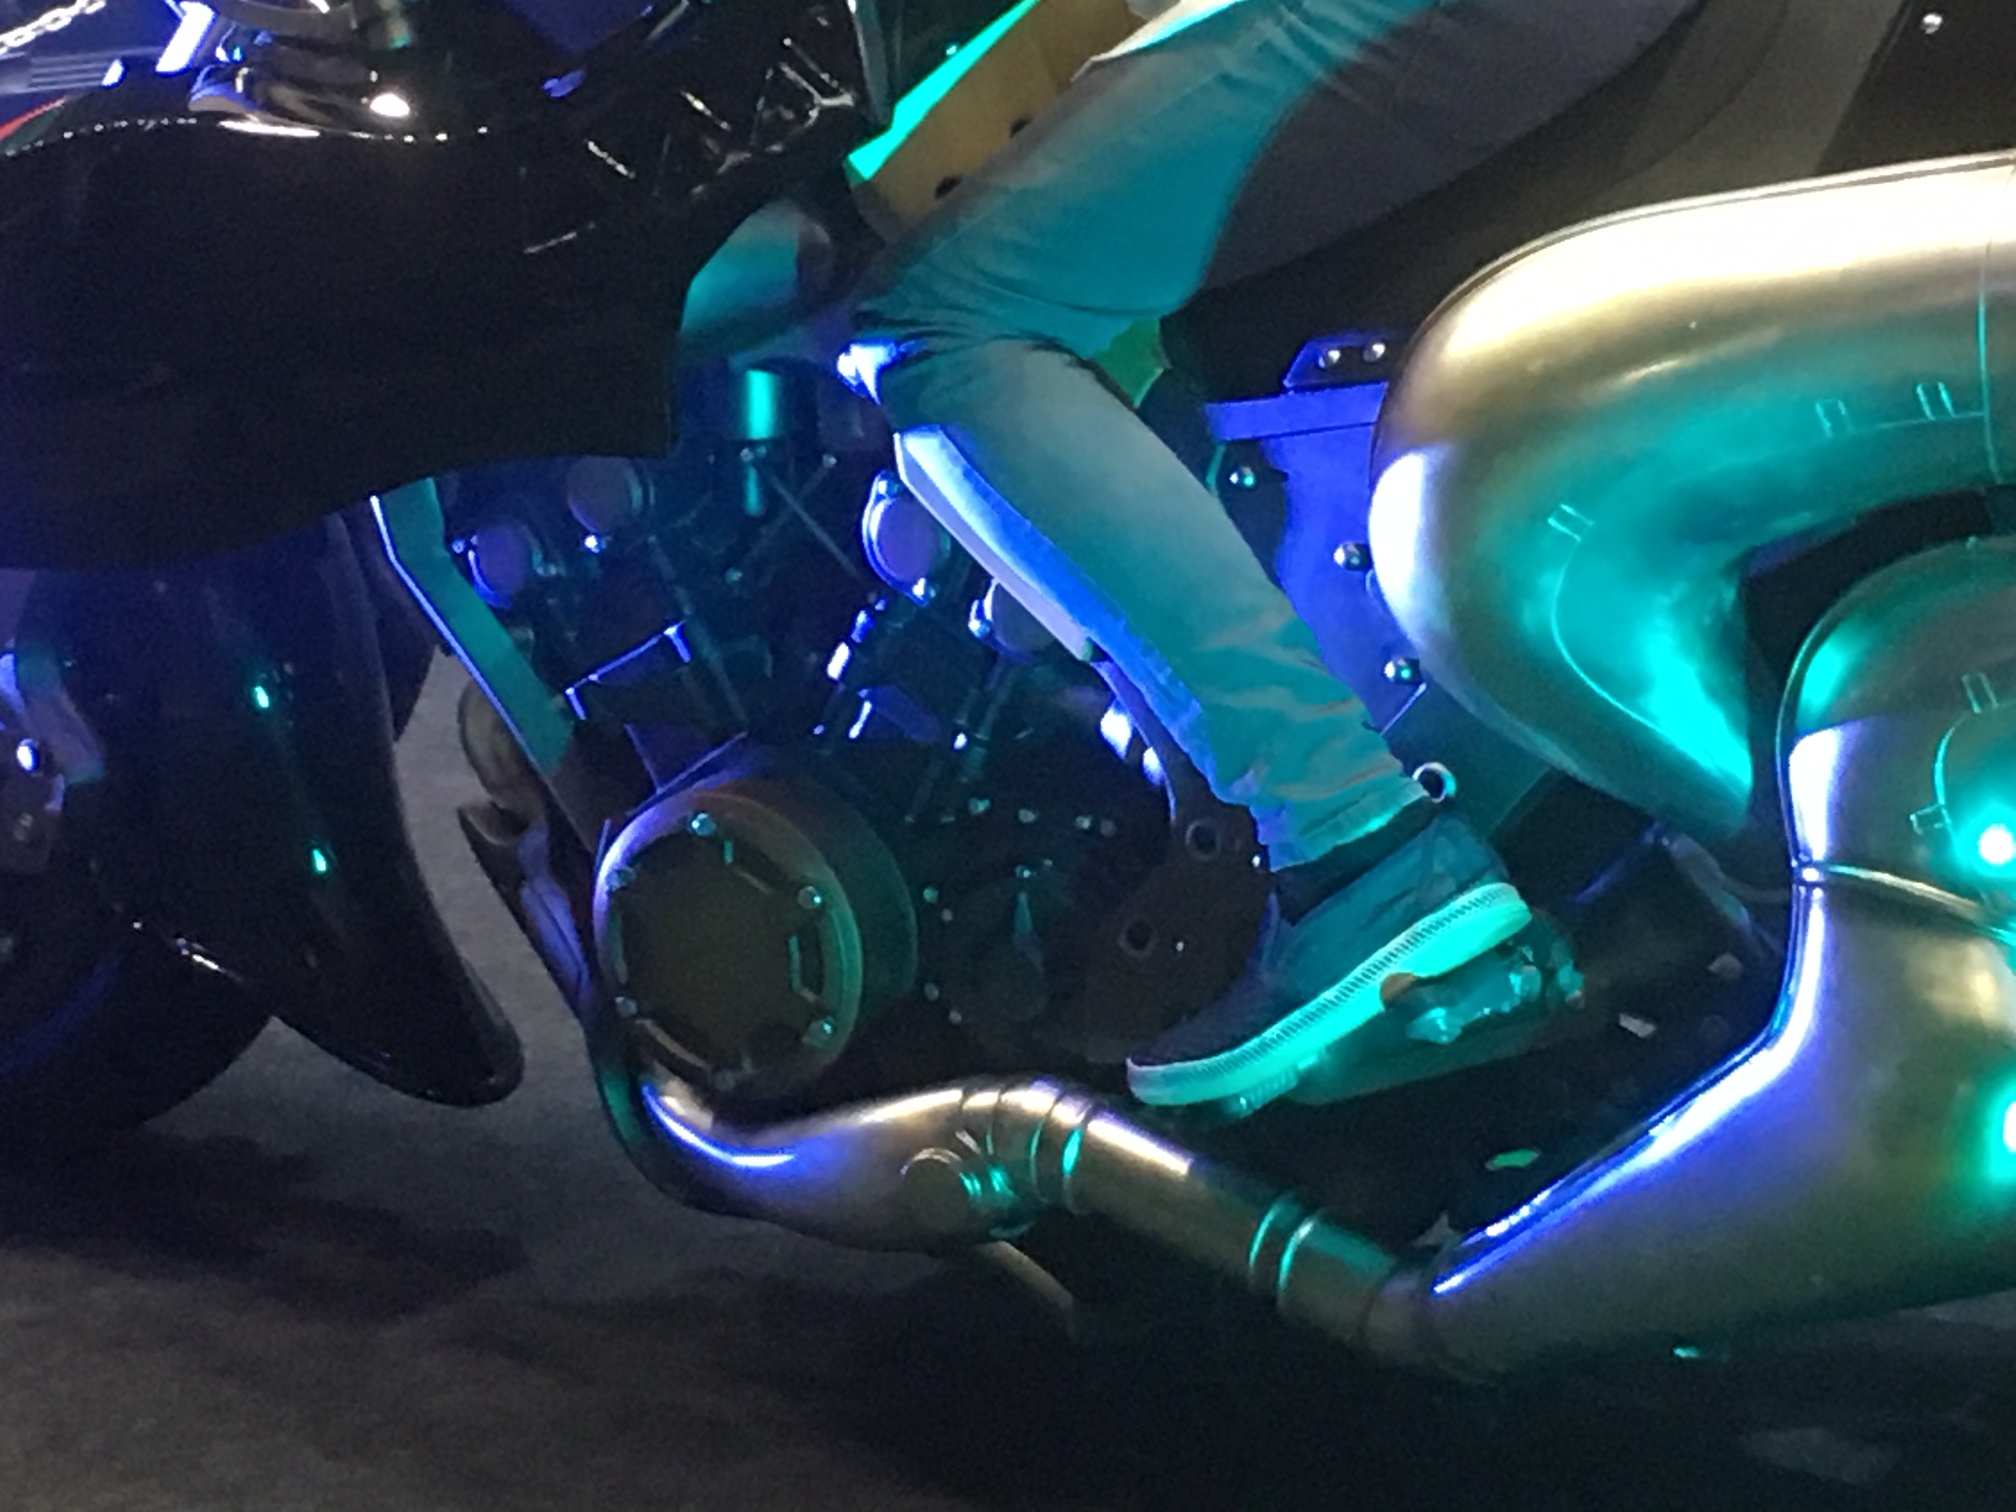 TGS：东京电玩展上最不缺的就是摩托车！